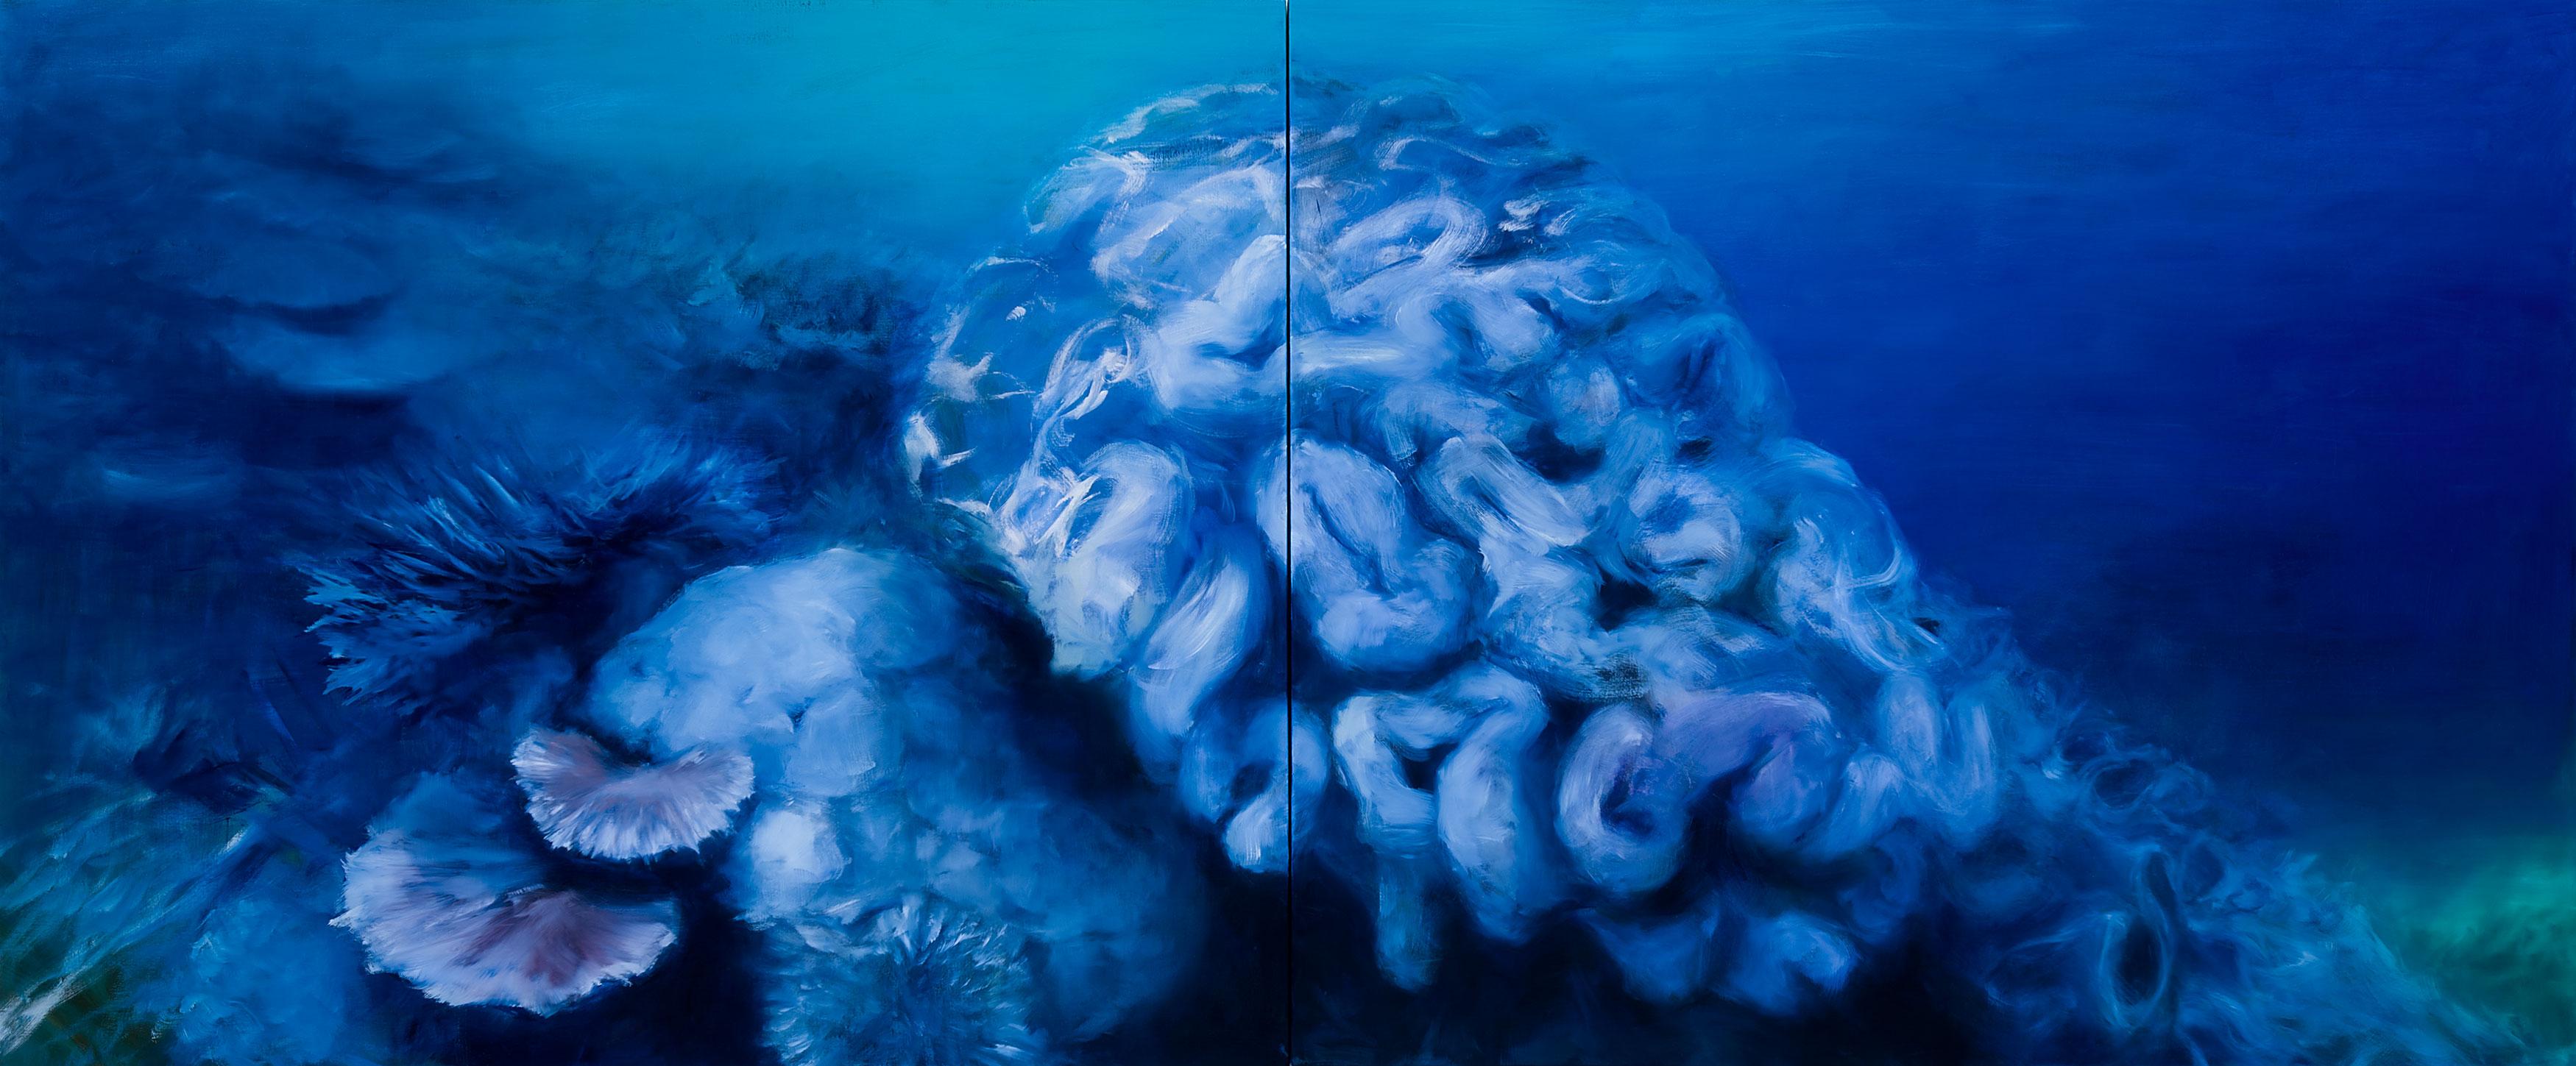 Figurative Painting Karen Marston - "Ebbing Reef" Corals, peinture à l'huile contemporaine de grand format de paysage marin (bleu profond)